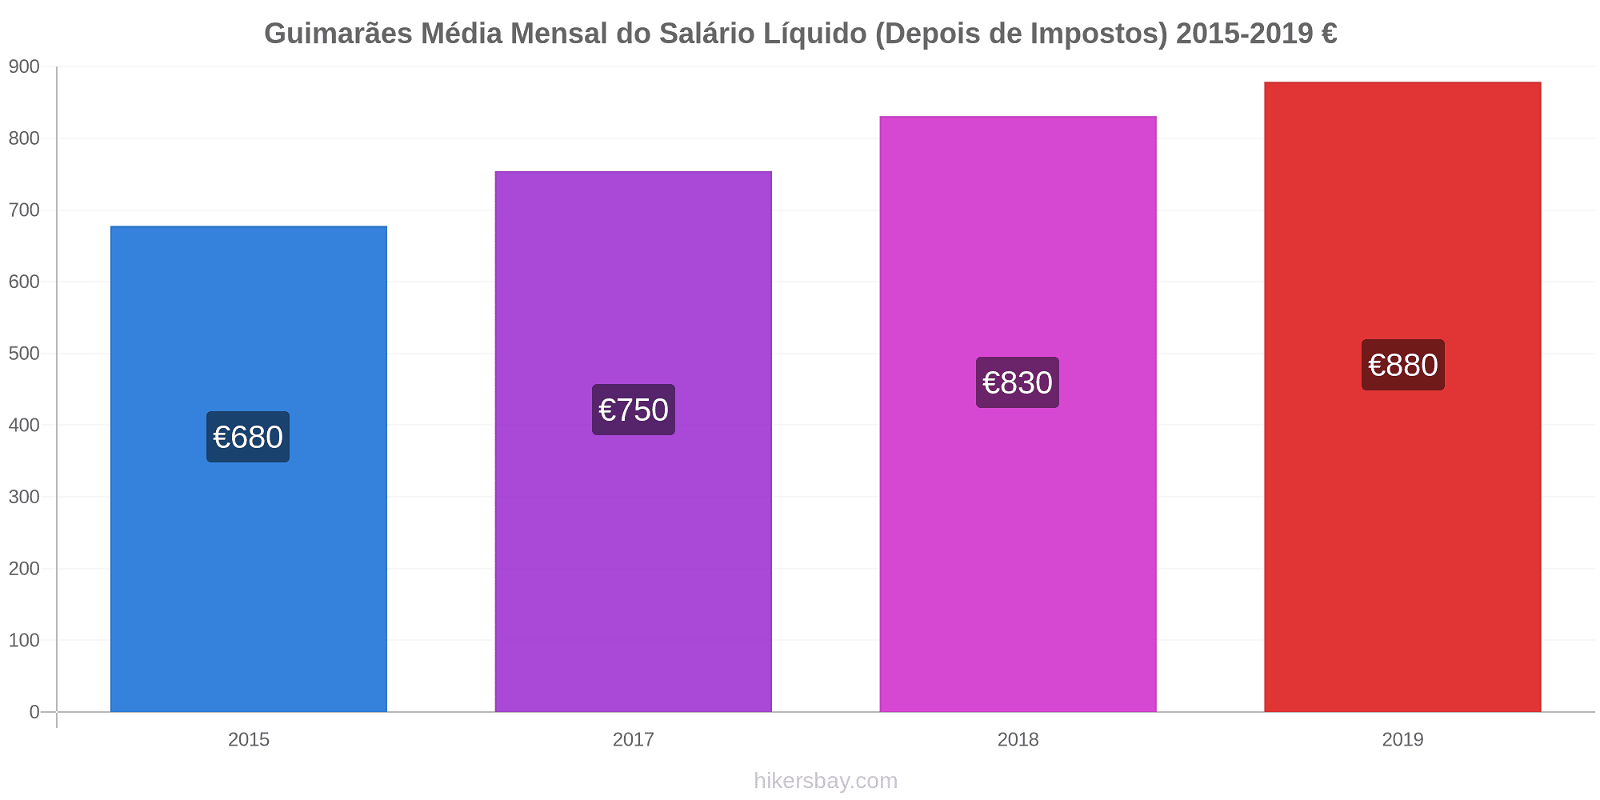 Guimarães variação de preço Salário líquido mensal médio (depois de impostos) hikersbay.com